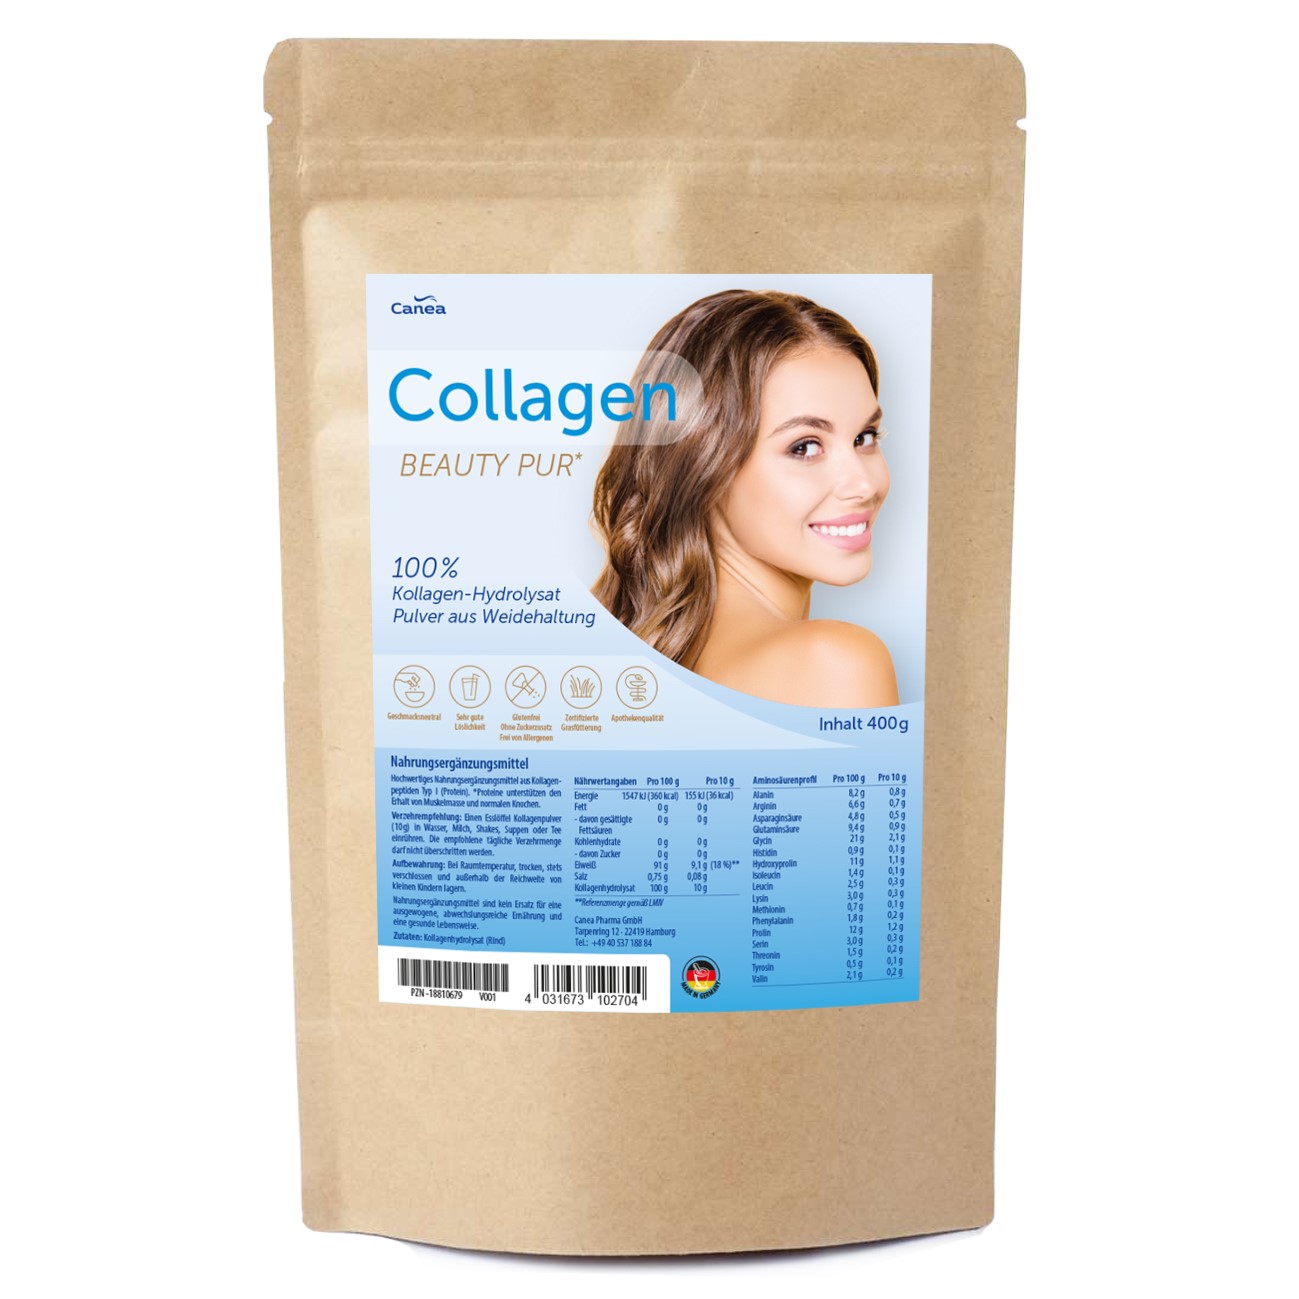 Collagen Beauty 100% Kollagen Hydrolysat